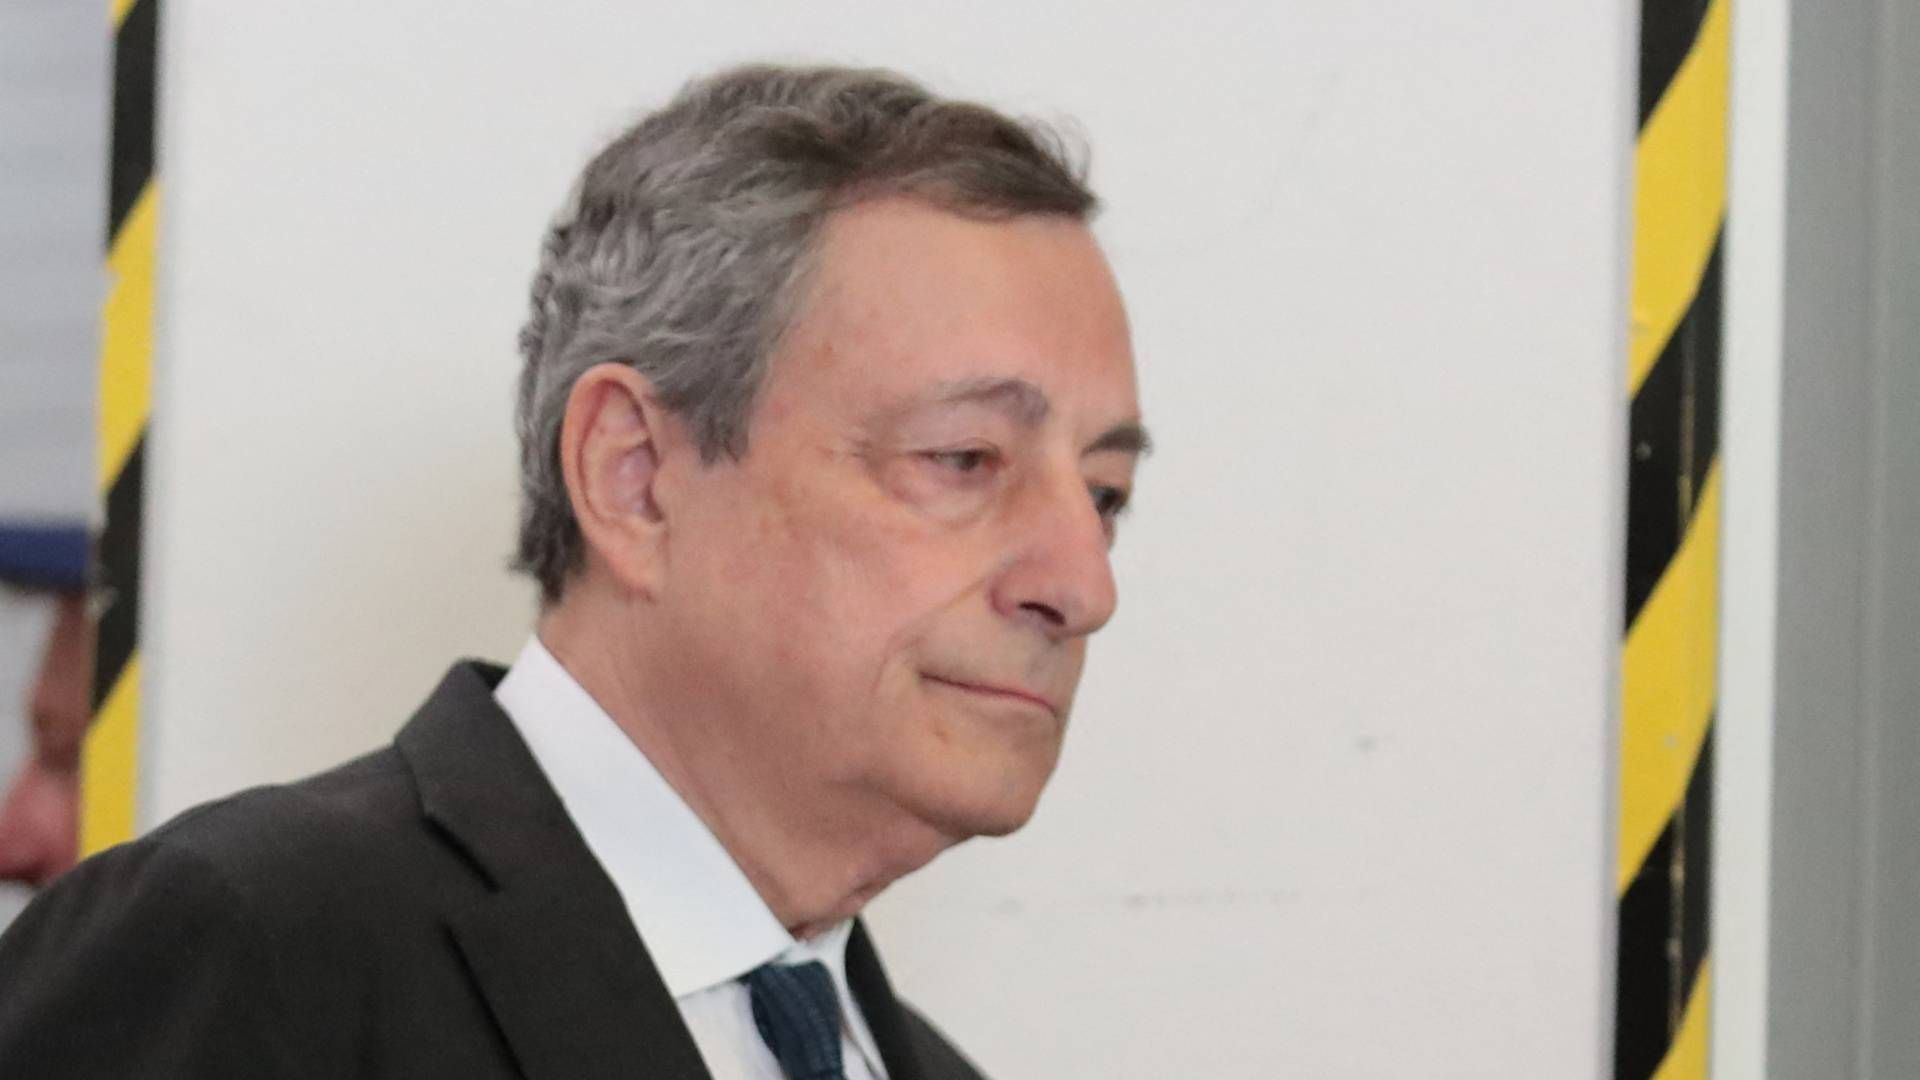 Draghi havde åbnet for at blive på posten, hvis han kunne sikre sig opbakning. | Foto: PIERRE TEYSSOT/AFP / AFP